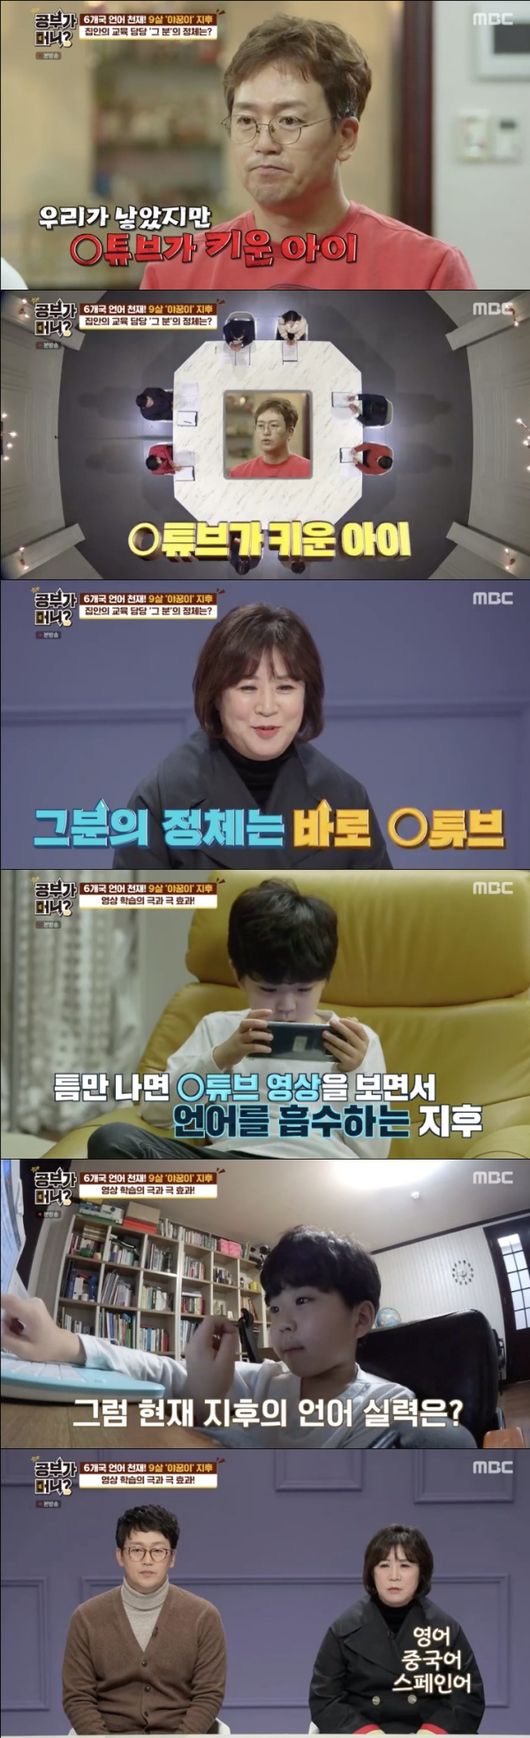 [사진=MBC 방송화면] '공부가 머니?'에서 배우 김정태 부부가 아이들의 유튜브 학습법에 대한 고민을 토로했다.